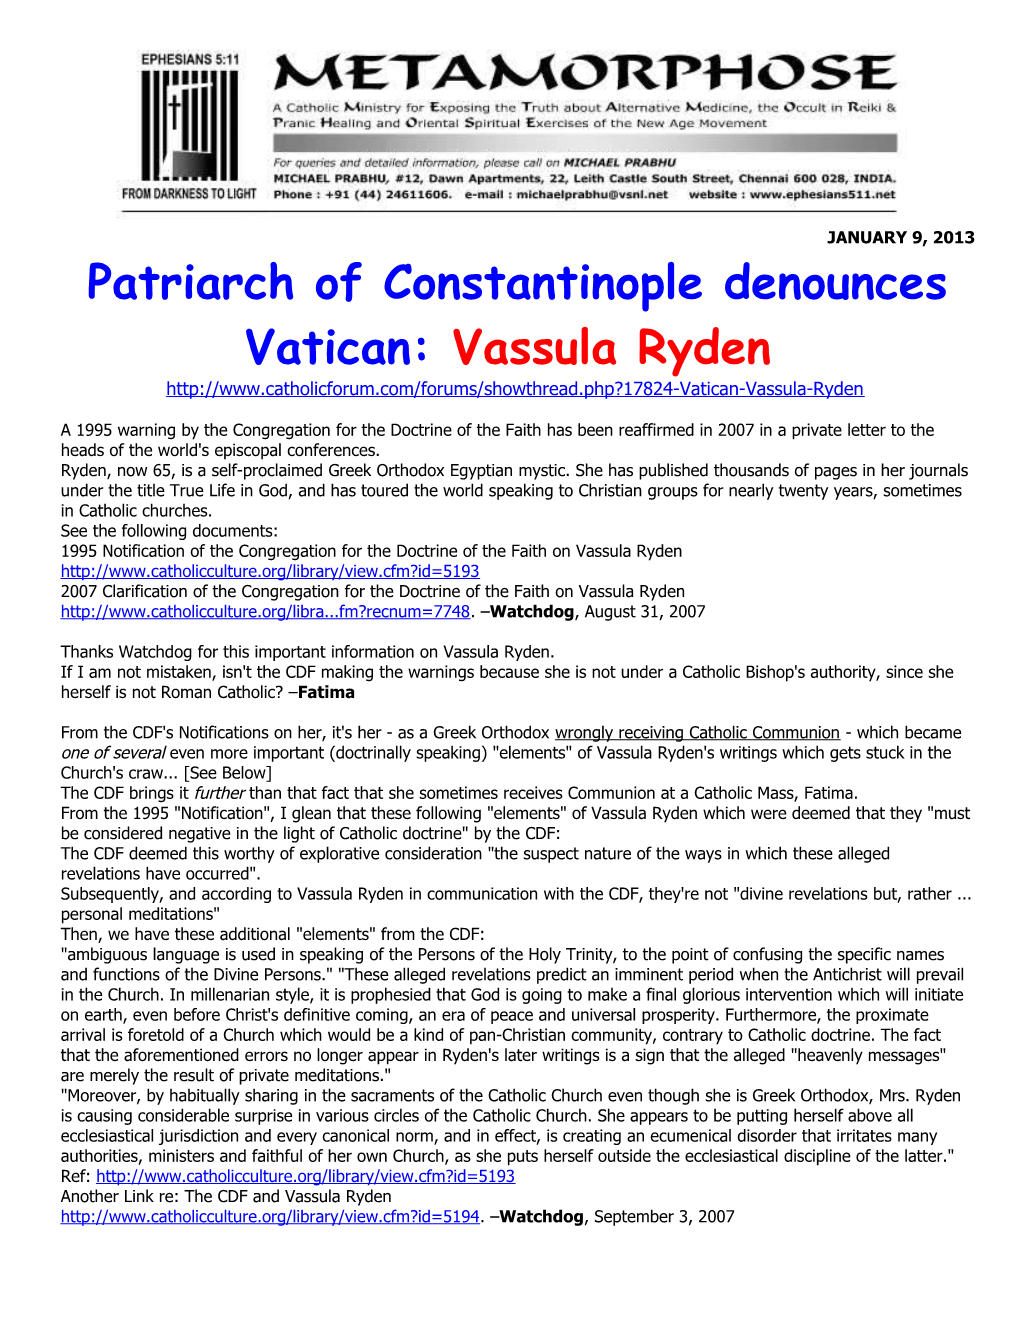 Patriarch of Constantinople Denouncesvatican:Vassula Ryden